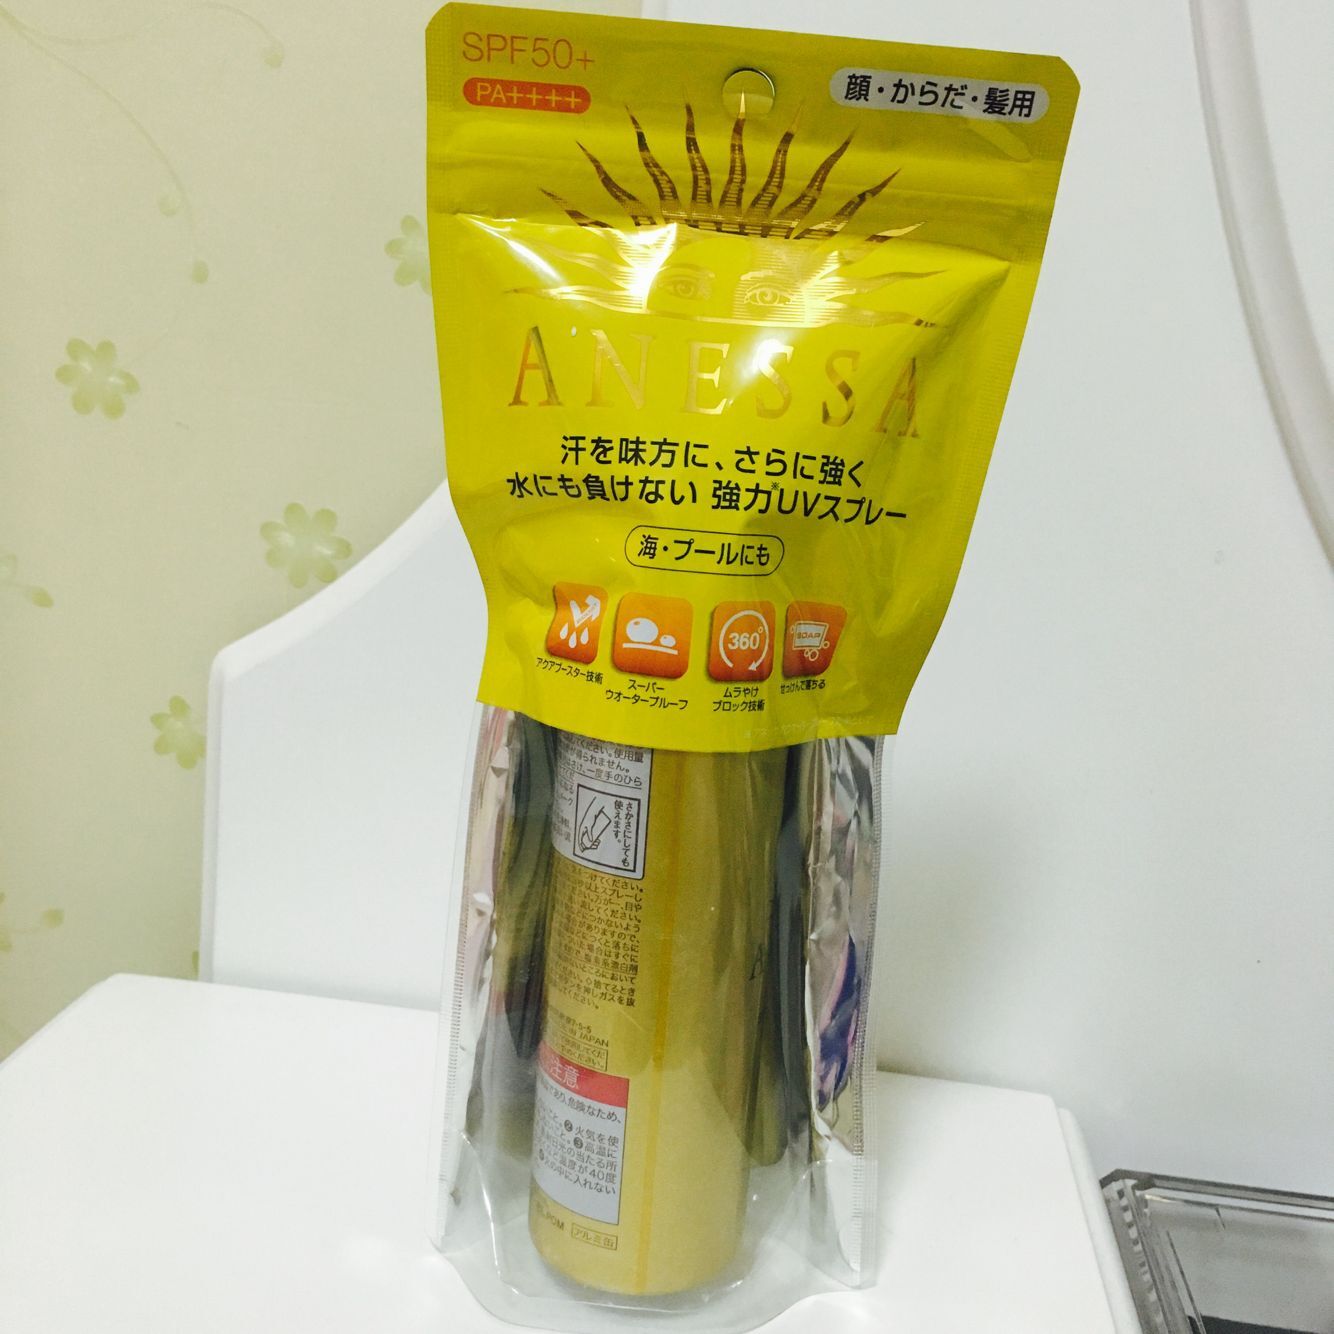 供应日本安耐晒防晒霜进口代理 日本快递化妆品到中国需要多久